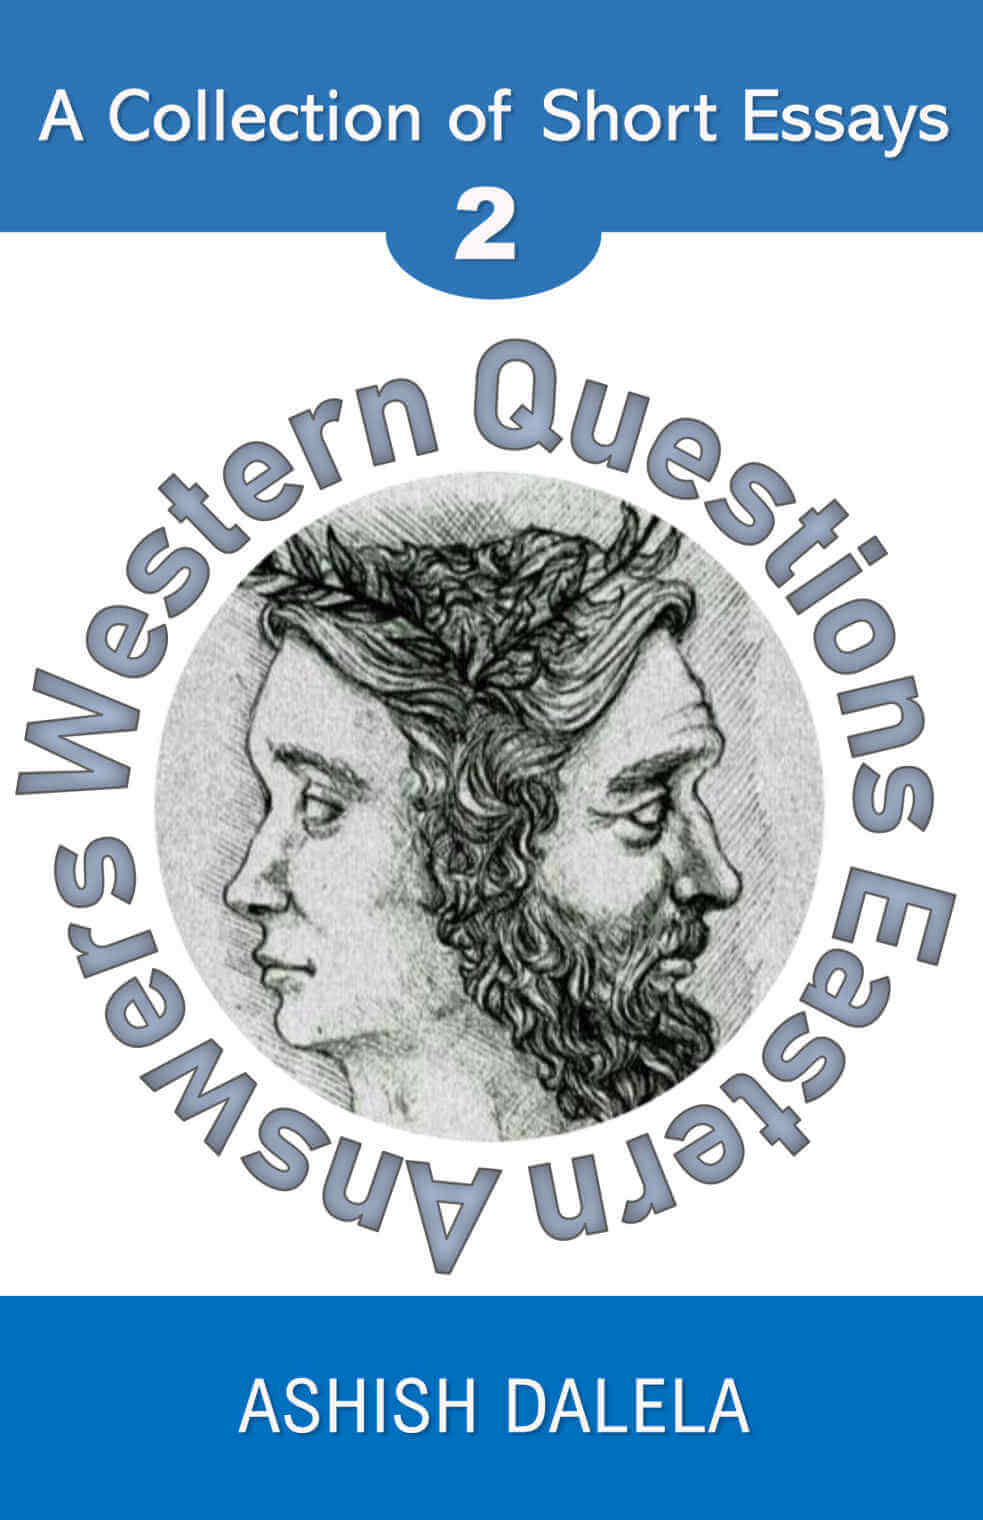 Westliche Fragen, östliche Antworten: Eine Sammlung kurzer Essays - Band 2